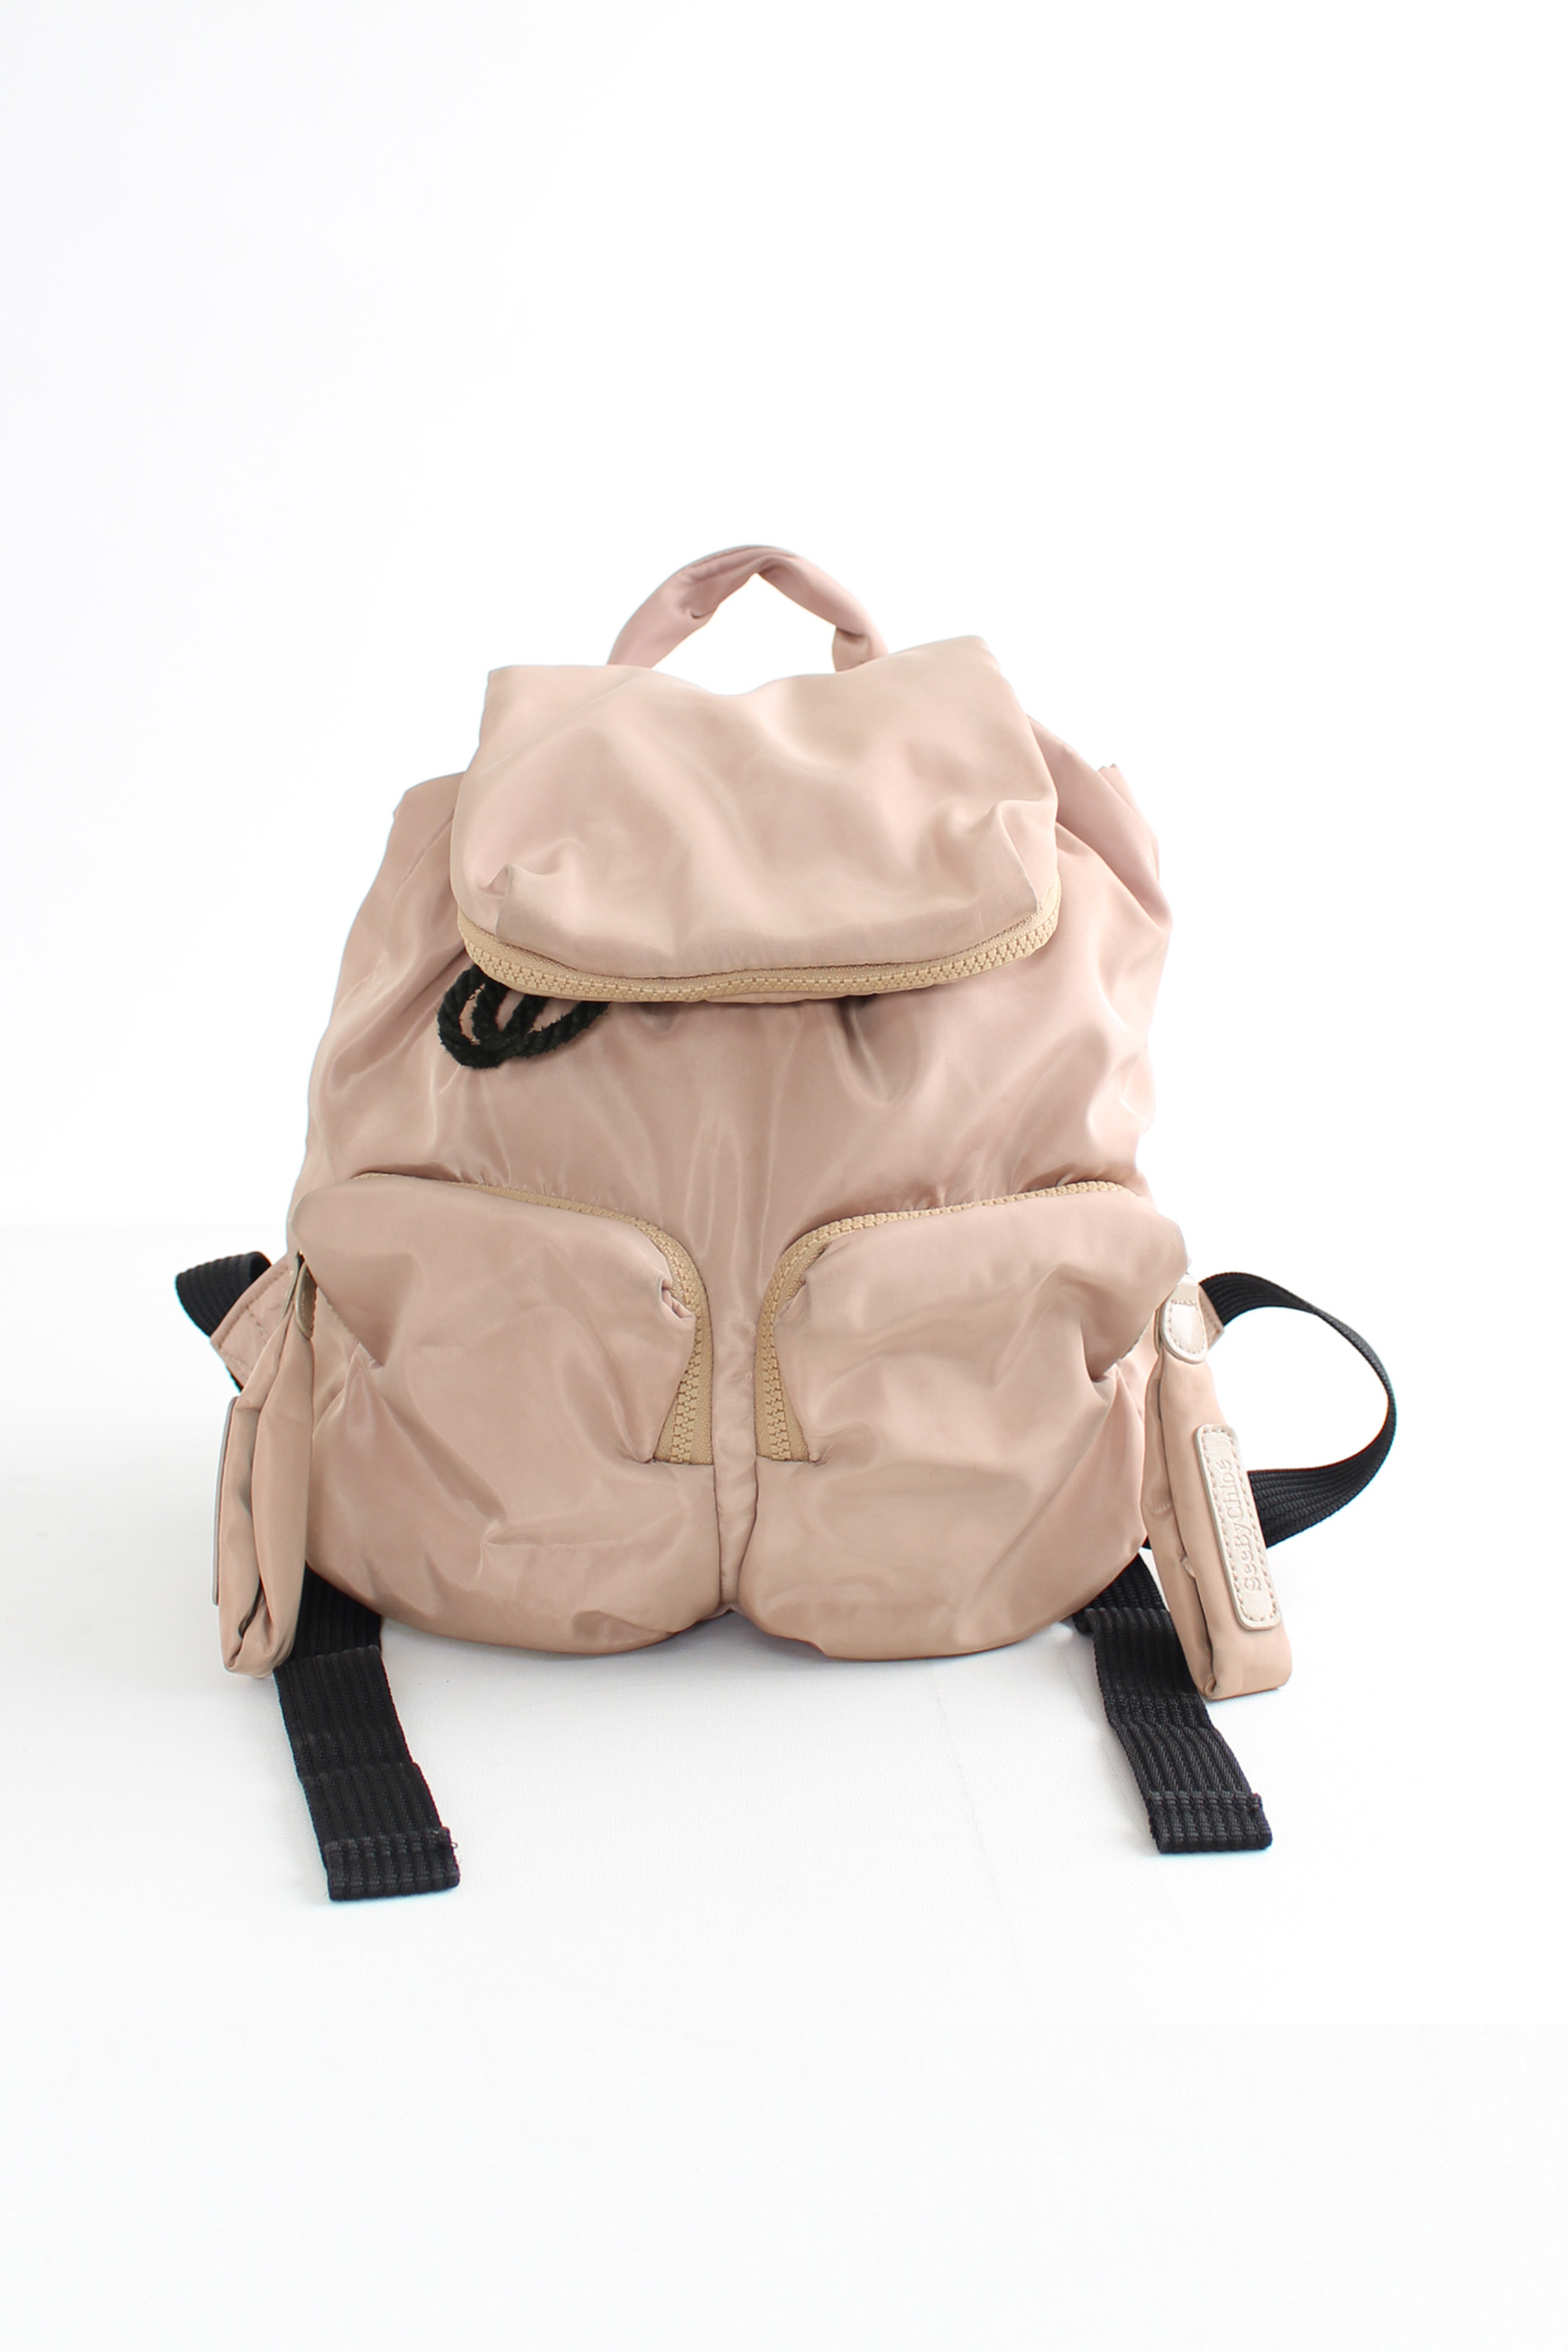 miss chloe backpack